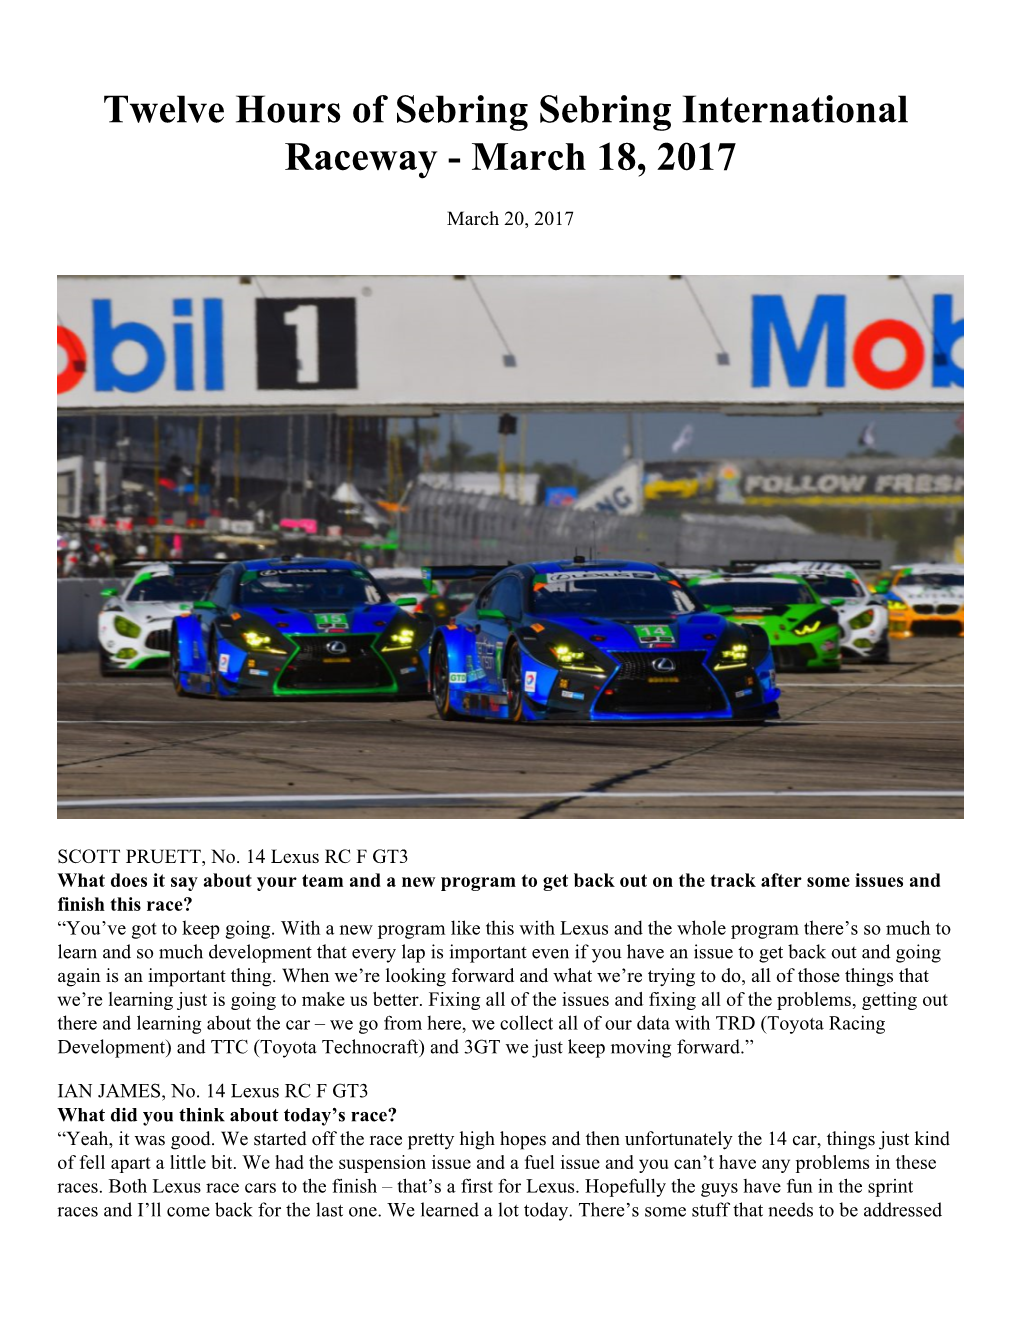 Twelve Hours of Sebring Sebring International Raceway - March 18, 2017